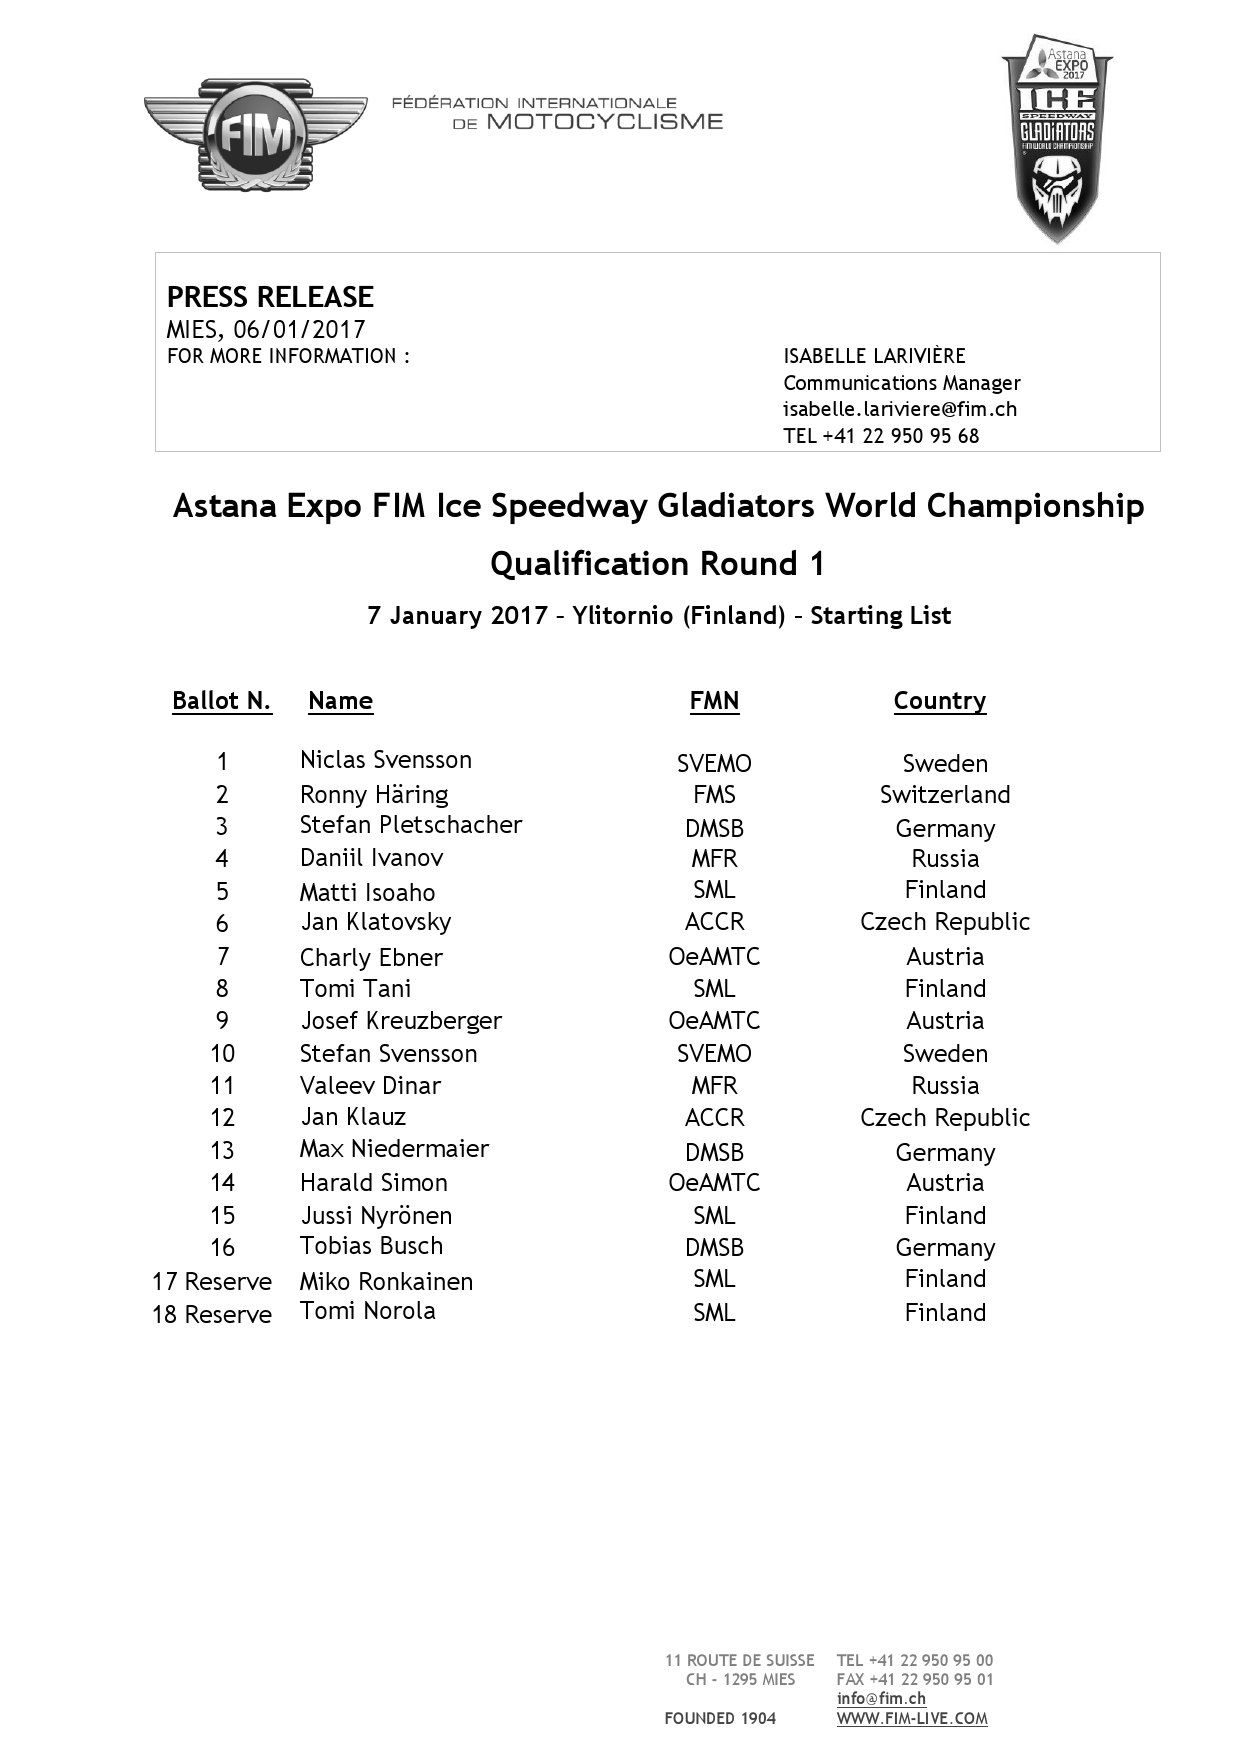 Списки участников квалификационного раунда FIM Ice Speedway Gladiators 2017, Финляндия, 7 января